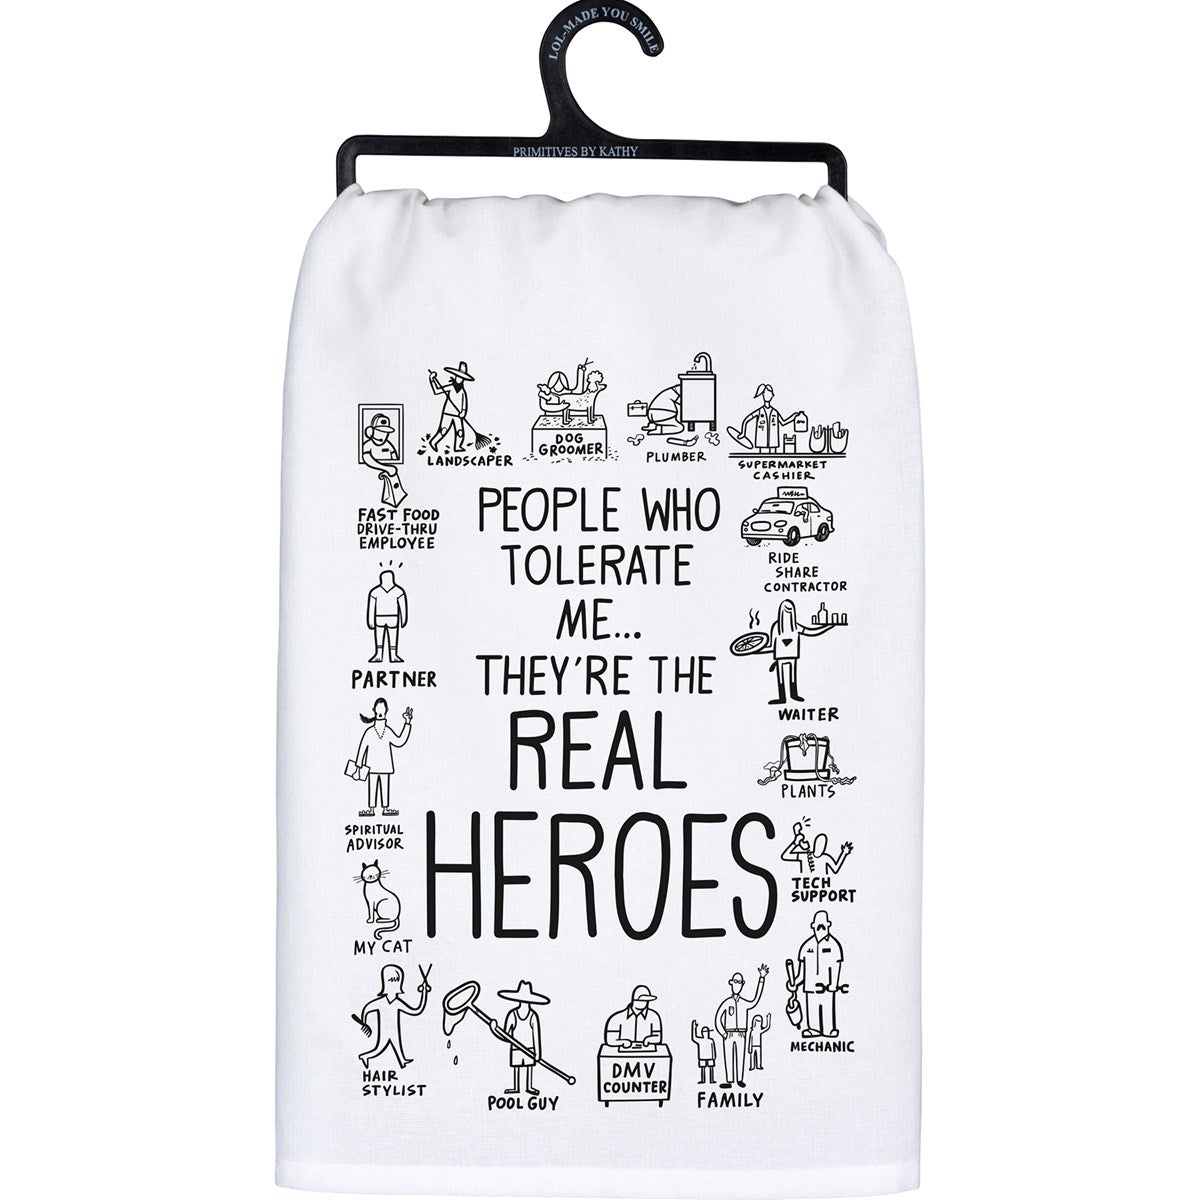 * Real heroes tea towel